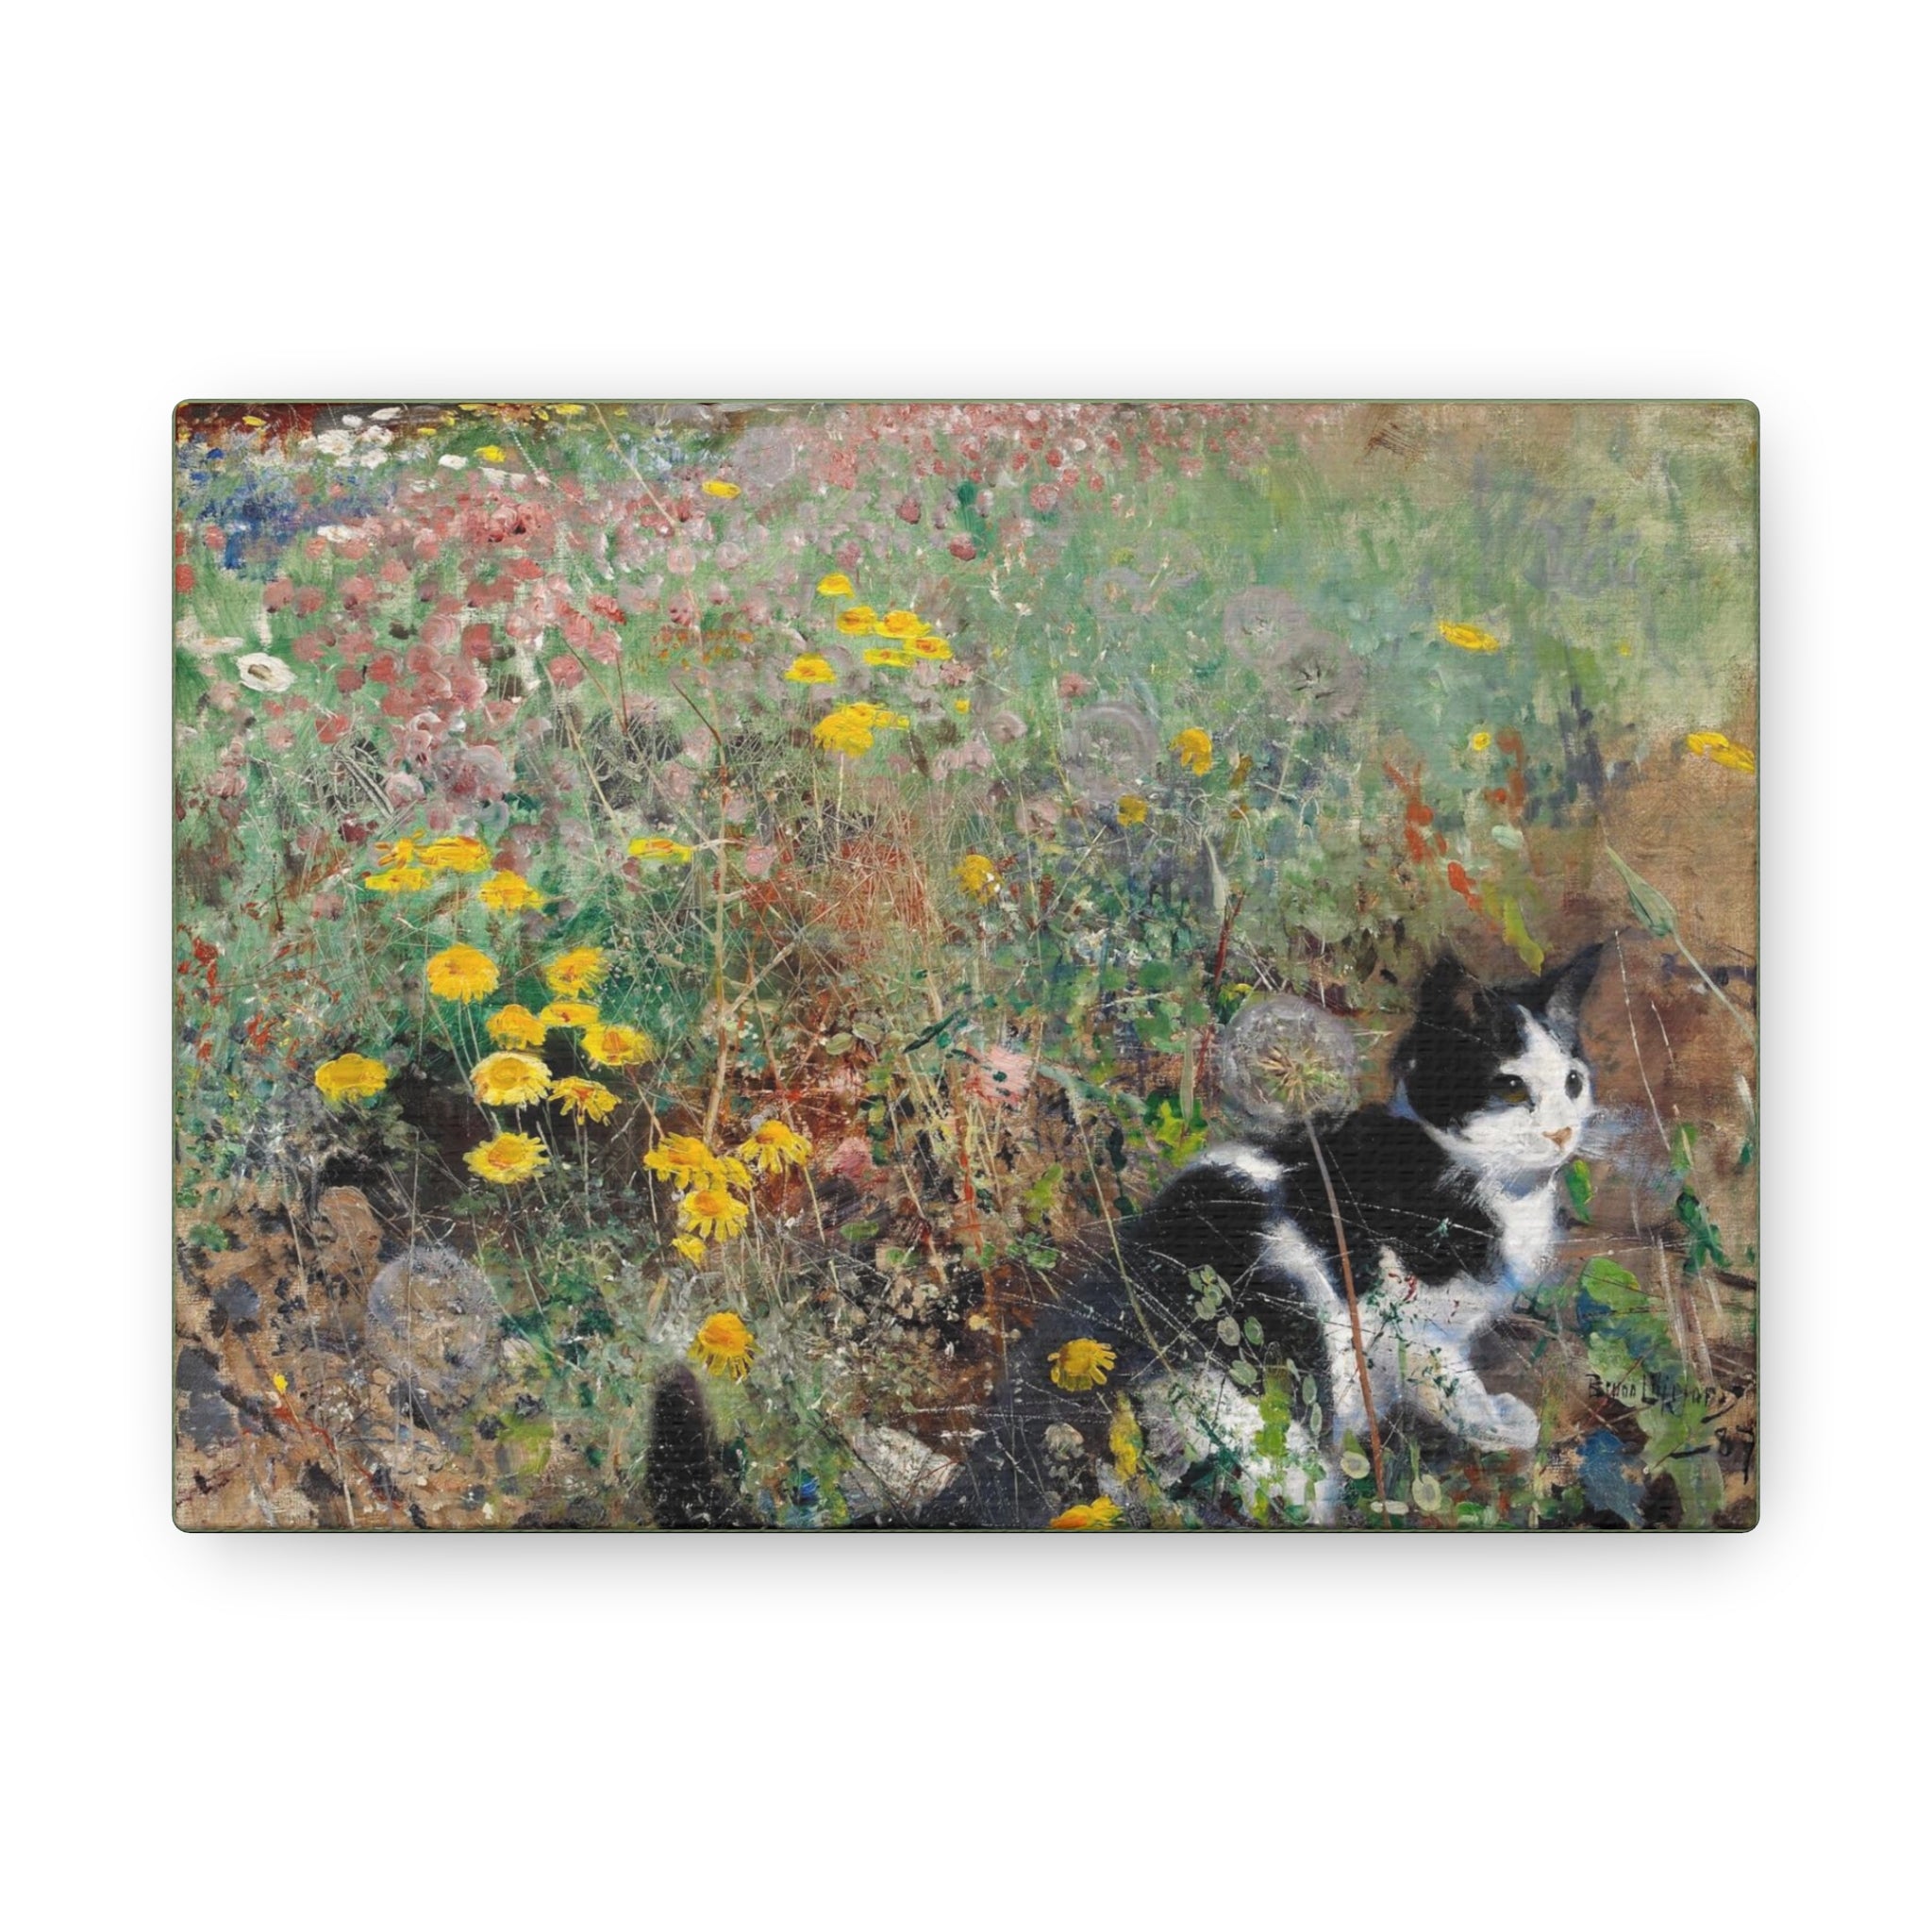 Gato en un prado florido